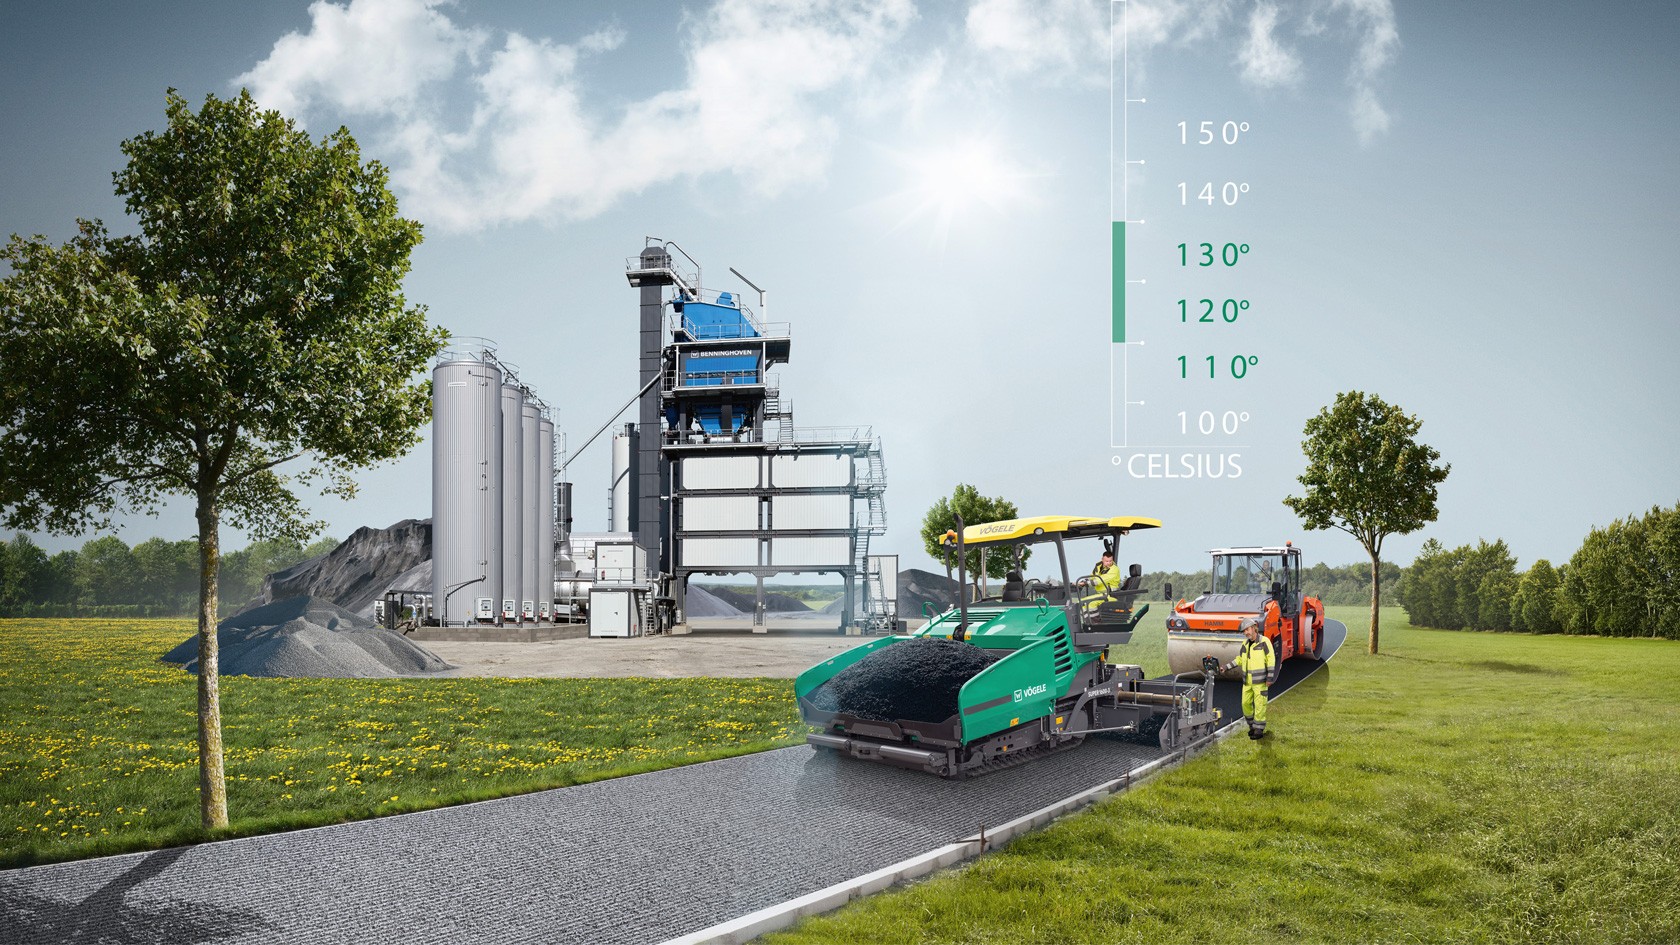 Düşük sıcaklıkta asfalt - Wirtgen Group teknolojik çözüme sahiptir.